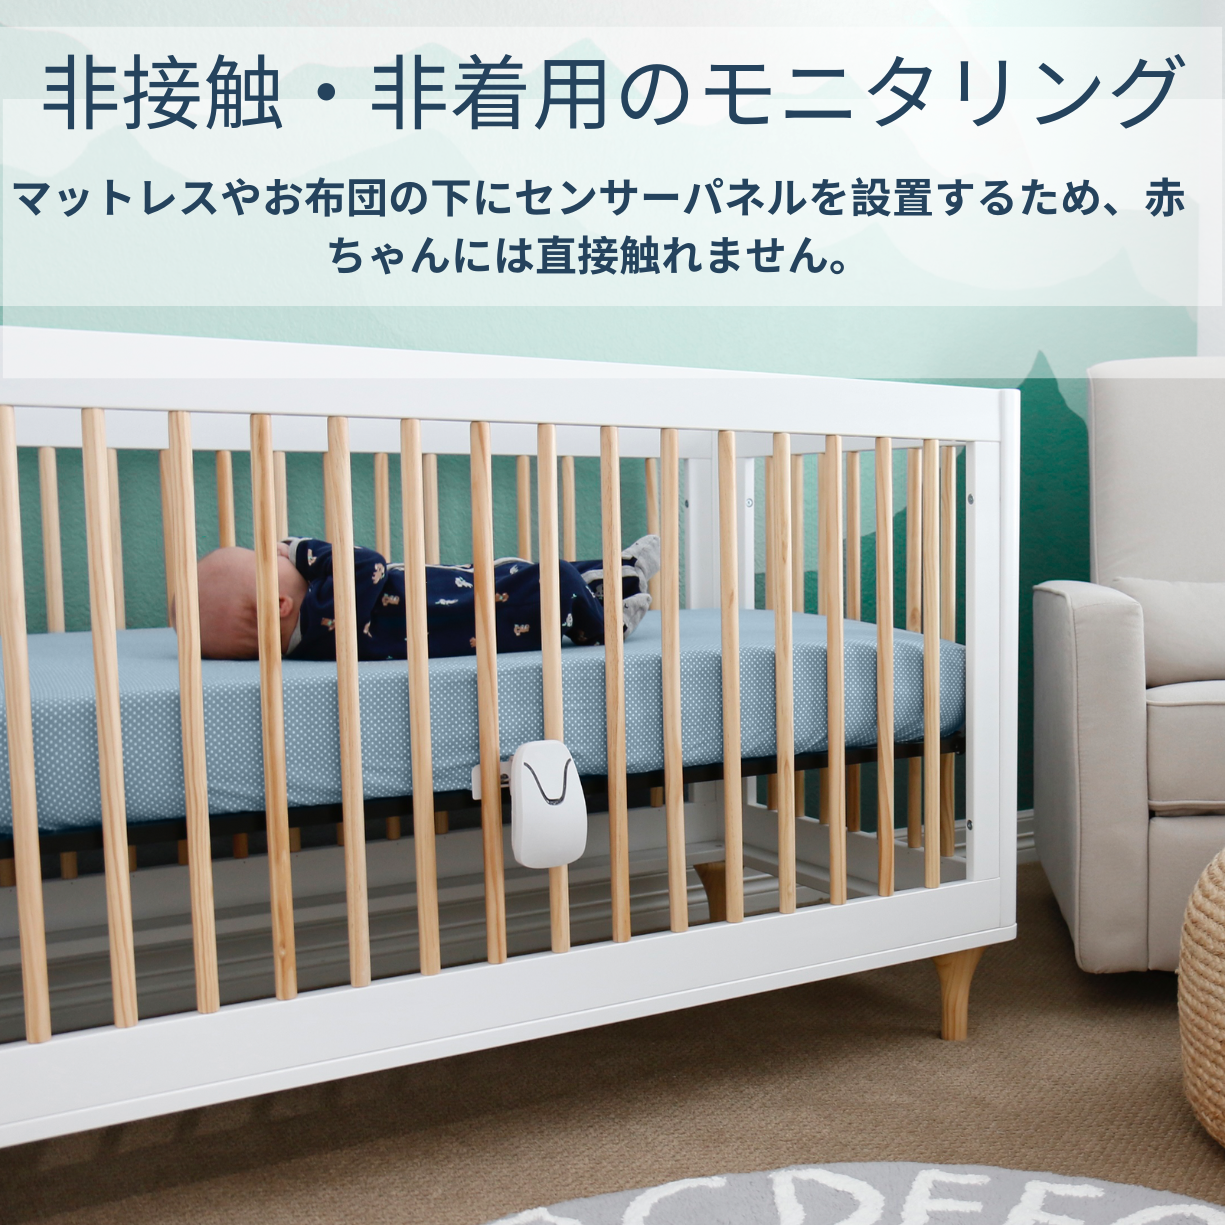 ベビーセンス7 Babysense 7 赤ちゃん 感知センサー | mdh.com.sa